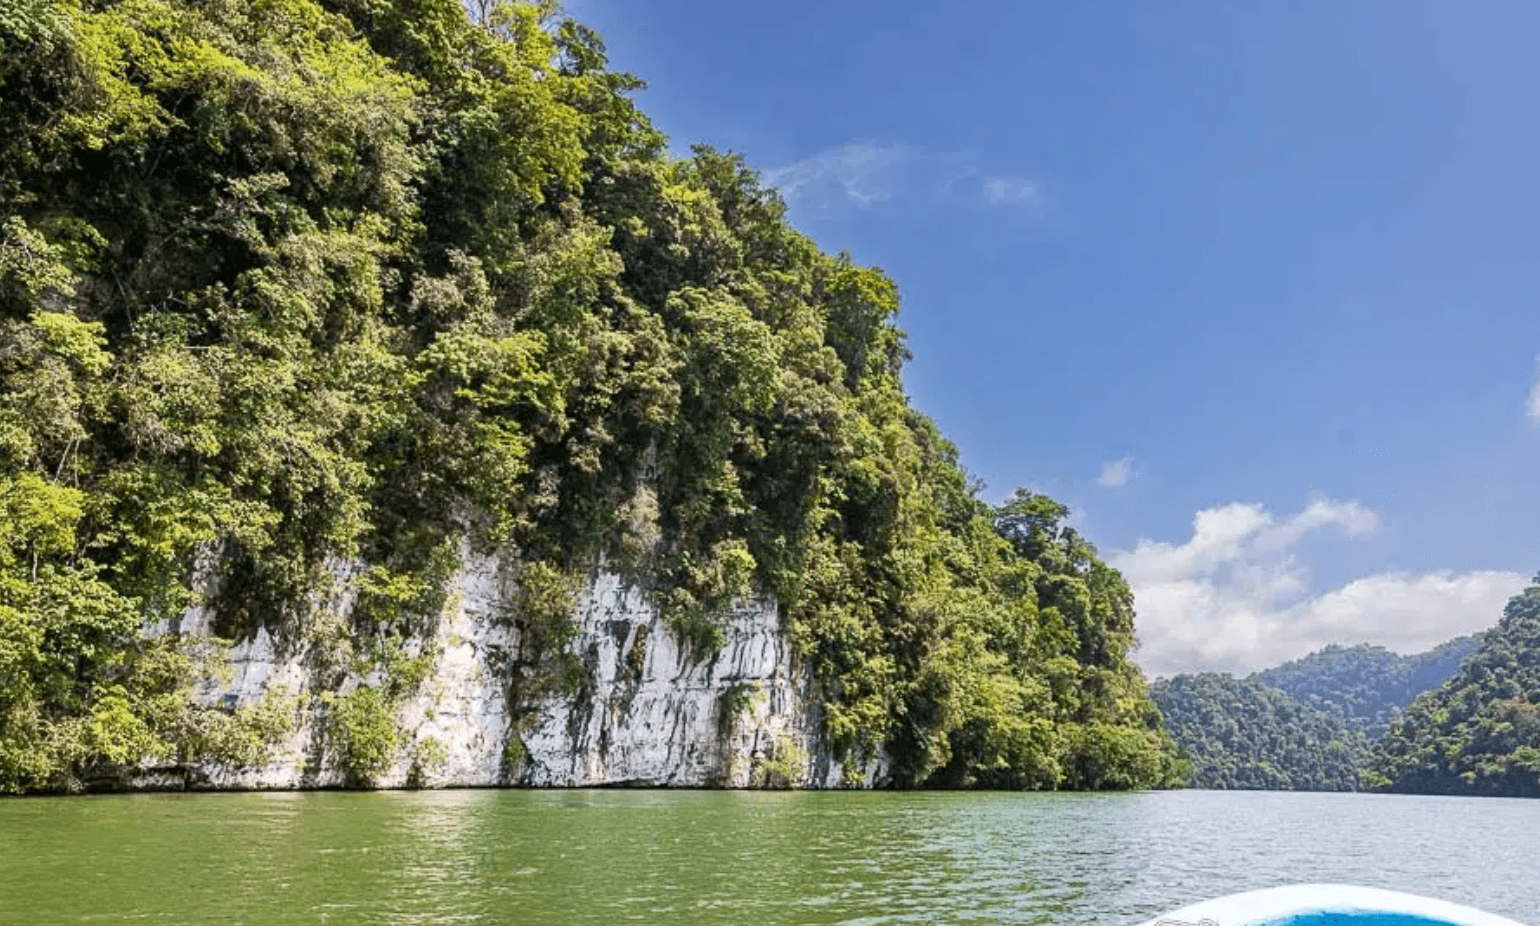 Rio Dulce cuts through towering limestone cliffs